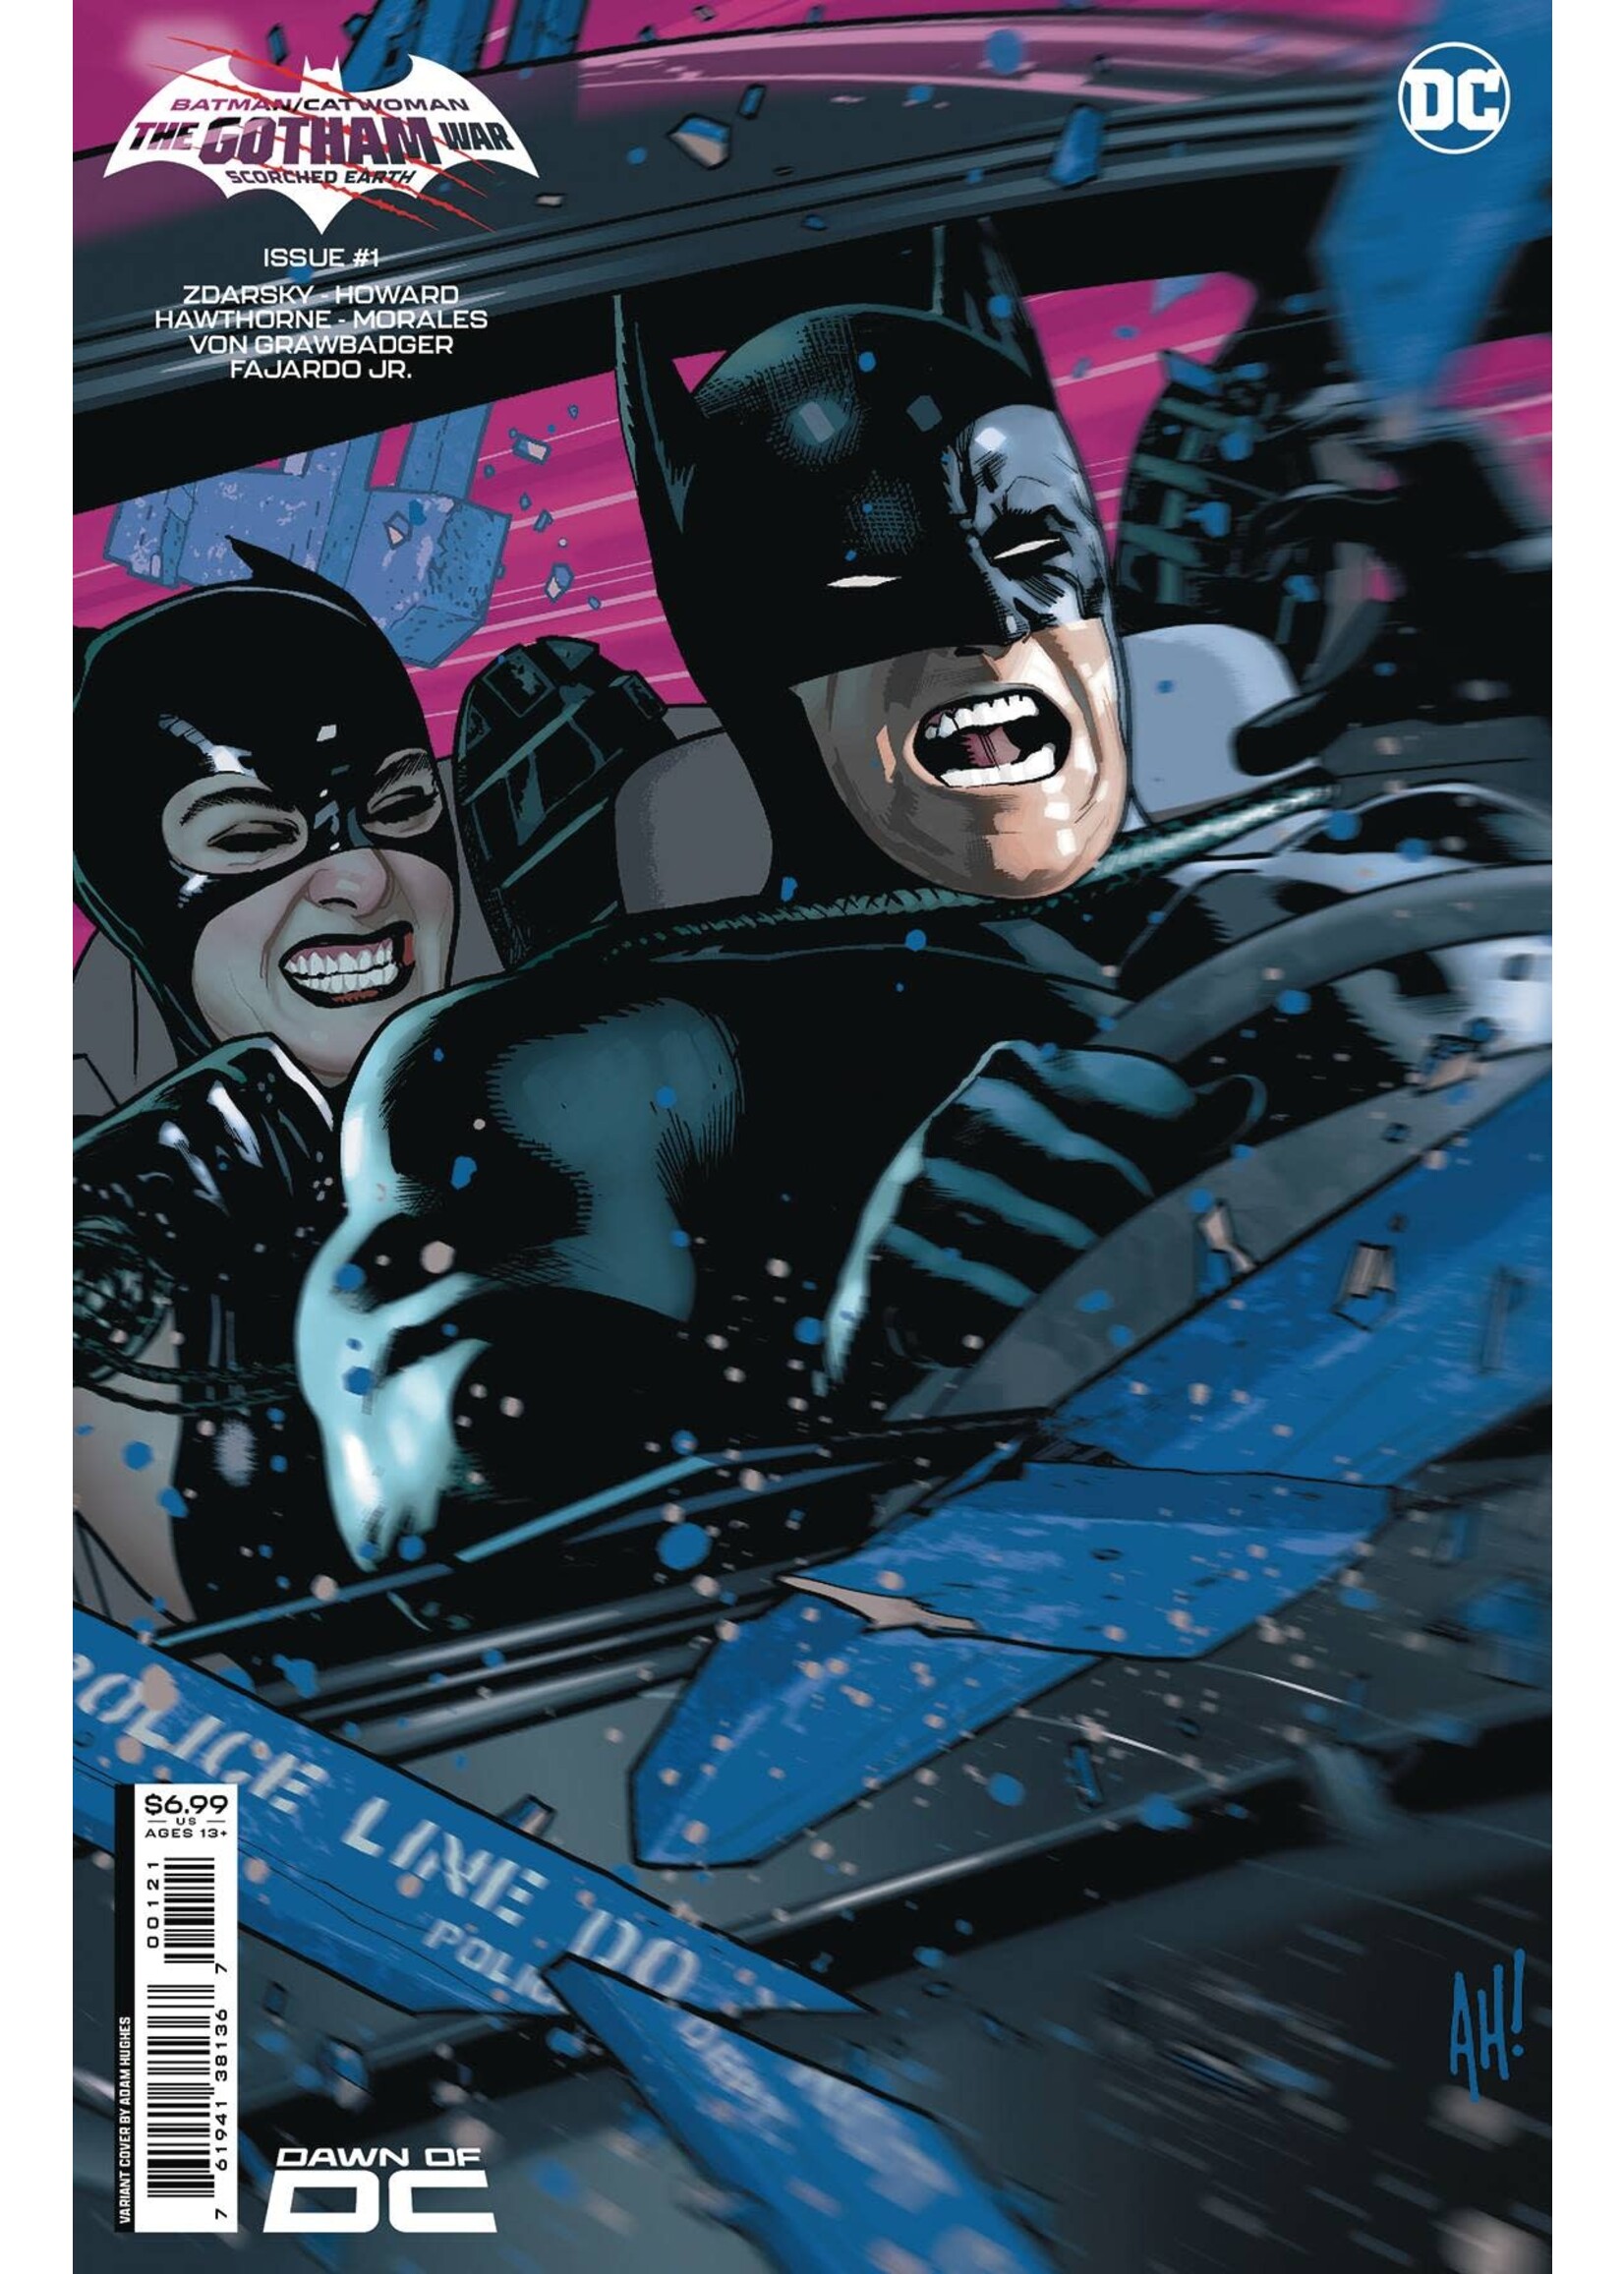 DC COMICS BATMAN/CATWOMAN GOTHAM WAR SCORCHED EARTH #1 HUGHES